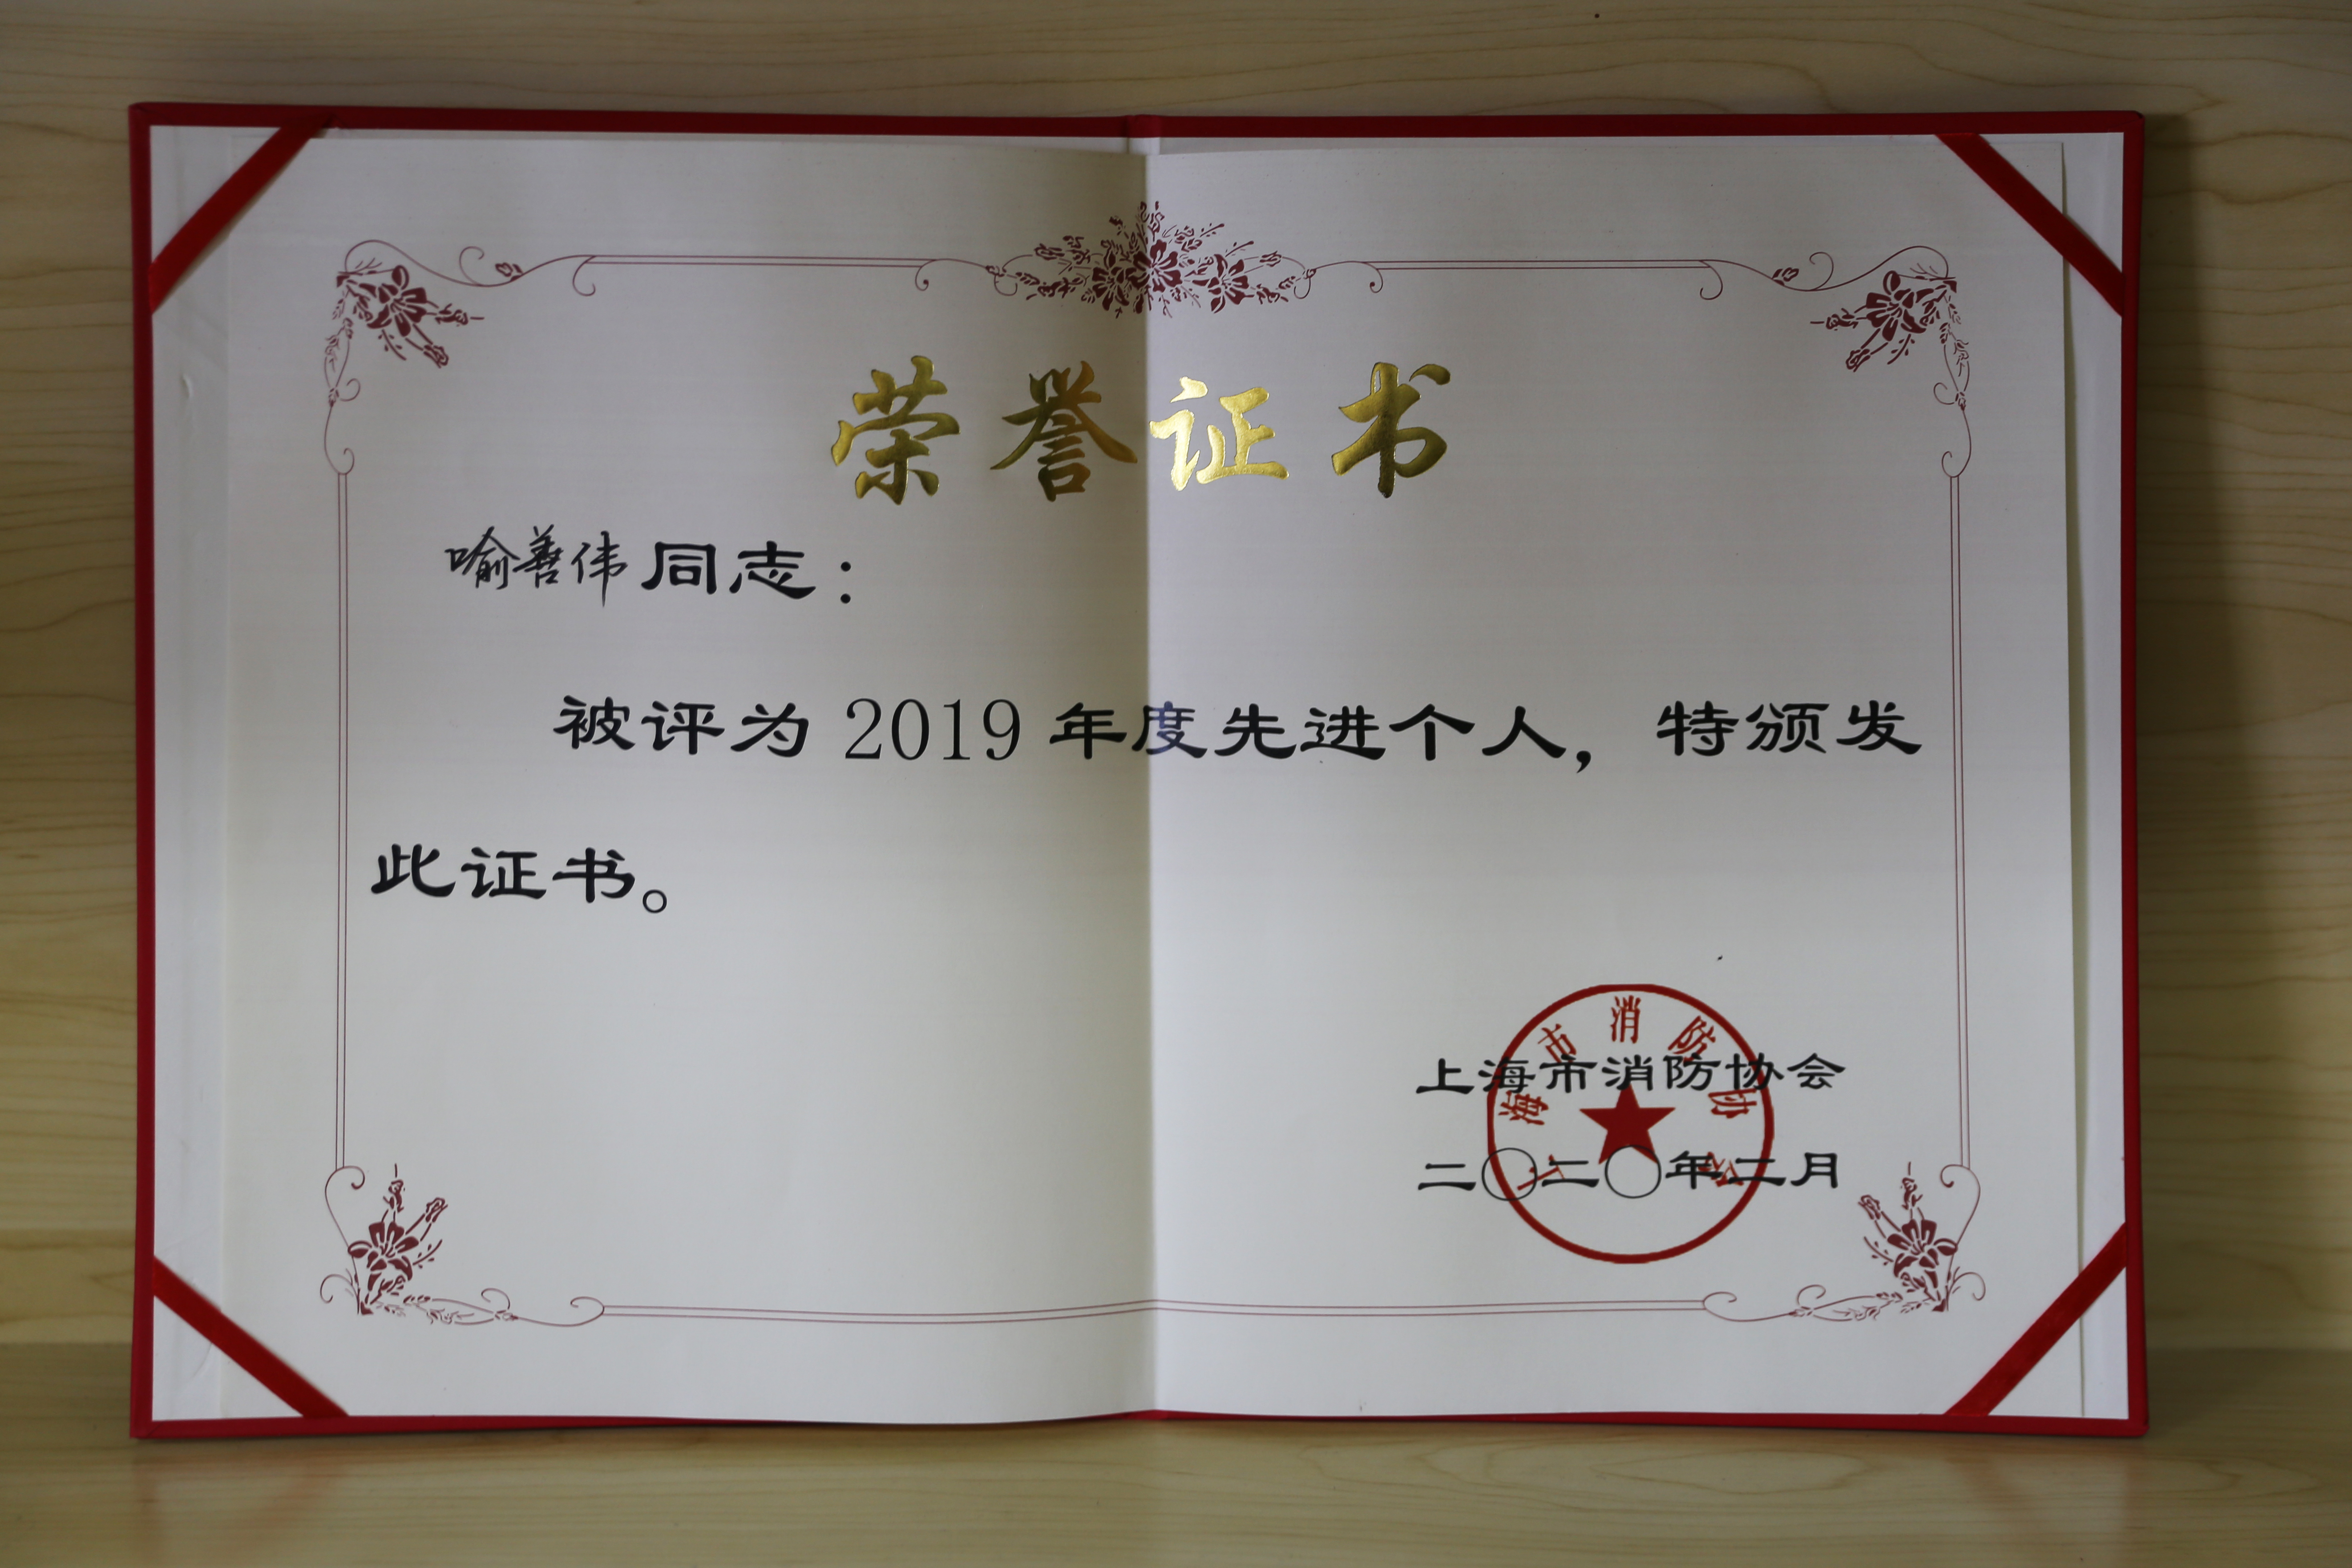 企福物业消防安全经理喻善伟荣获“上海市消防协会2020年度先进个人”（松江区仅2人获此殊荣）